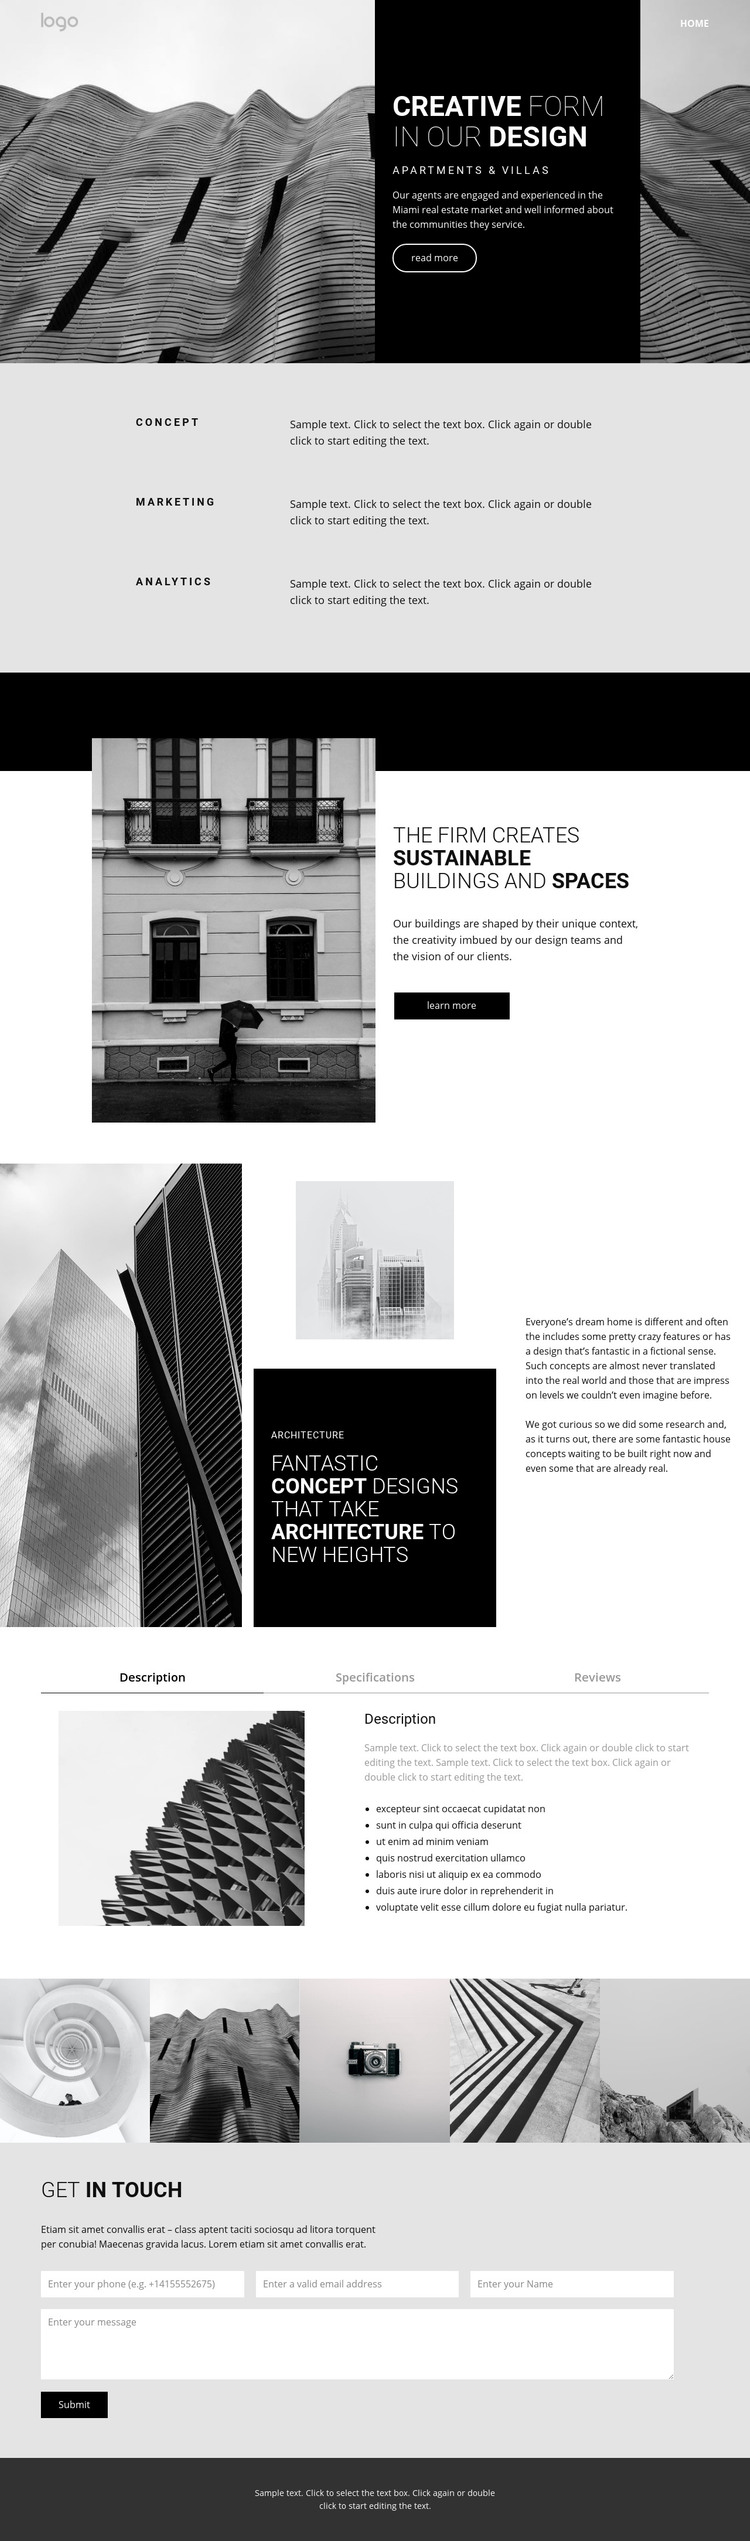 Creative concept architecture Homepage Design